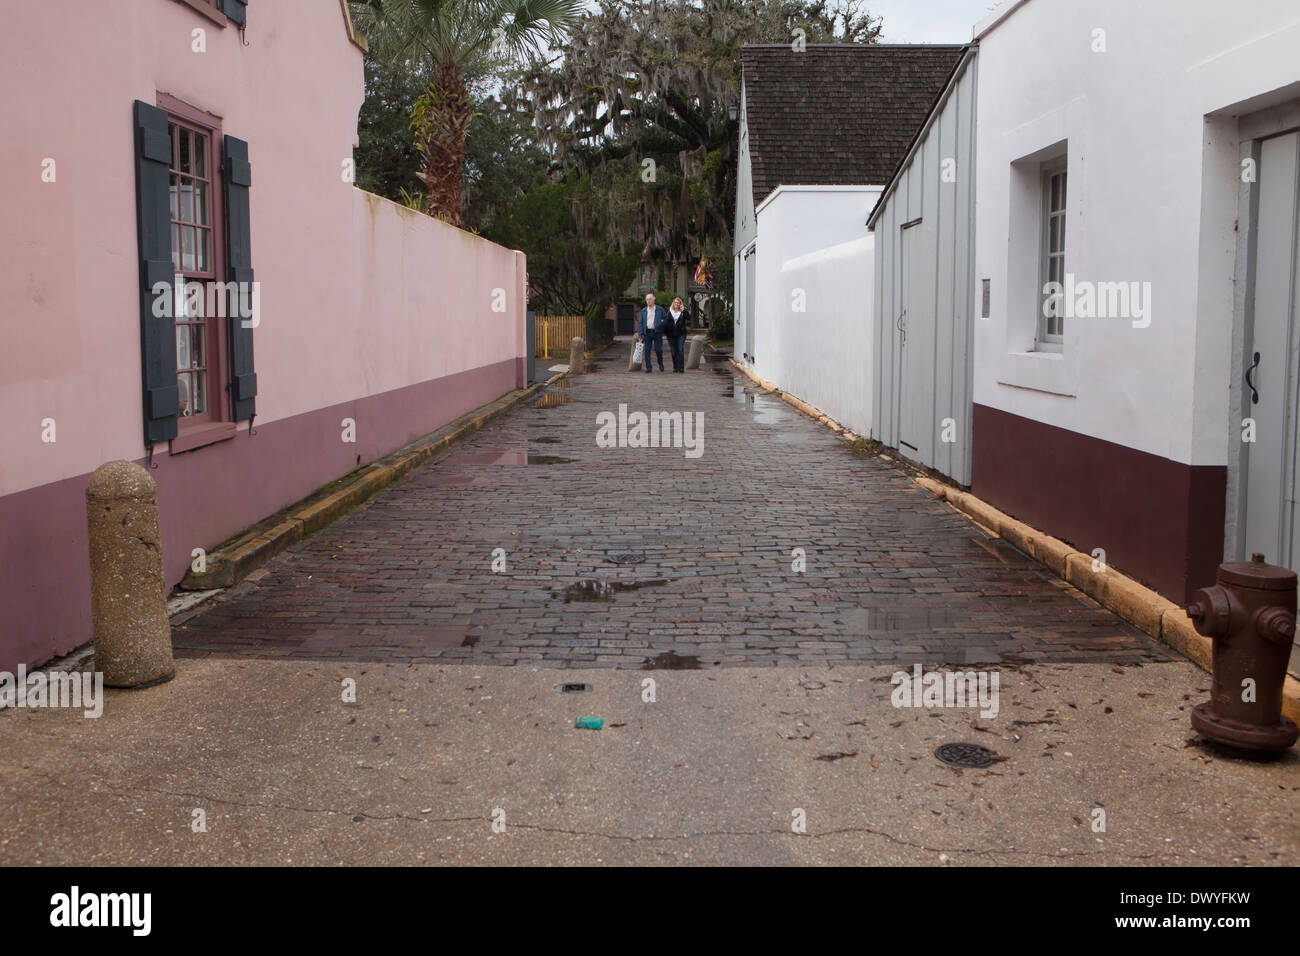 Abgebildet ist eine schmale asphaltierte Straße im historischen Bezirk St. Augustine, Florida Stockfoto